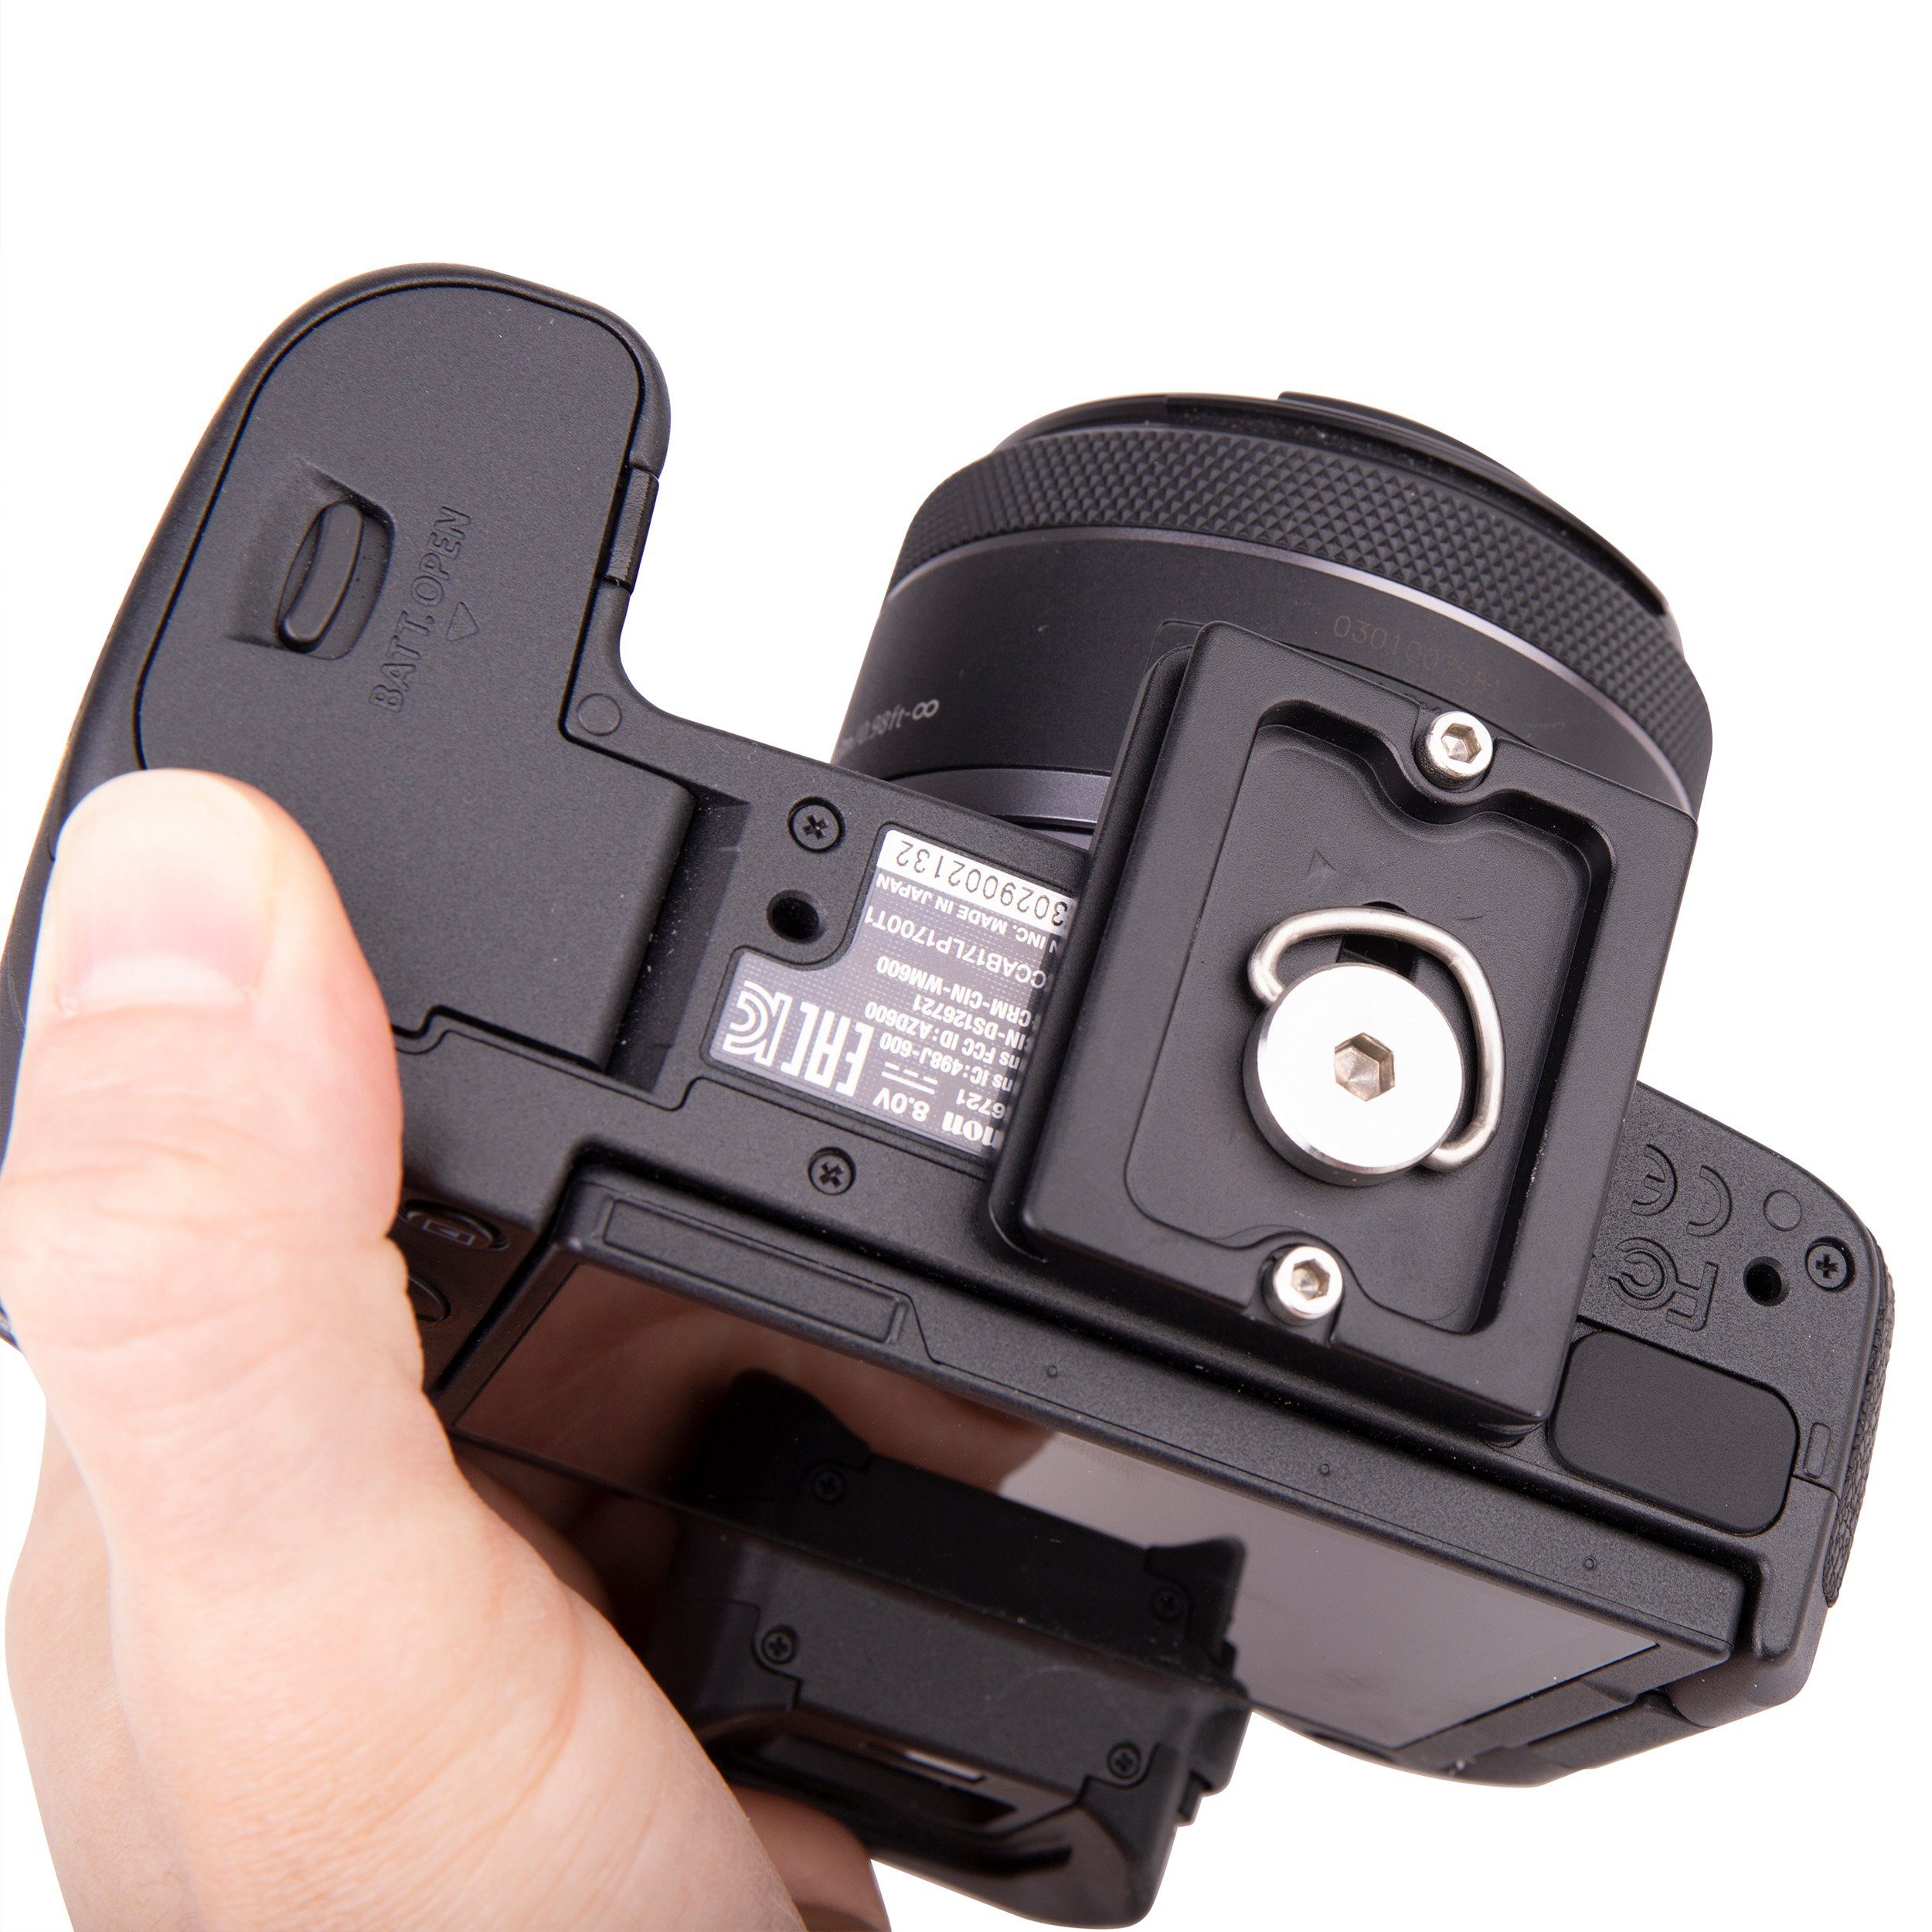 kompatibel) Lens-Aid 55 Stativhalterung Swiss mm Schnellwechselplatte (Arca